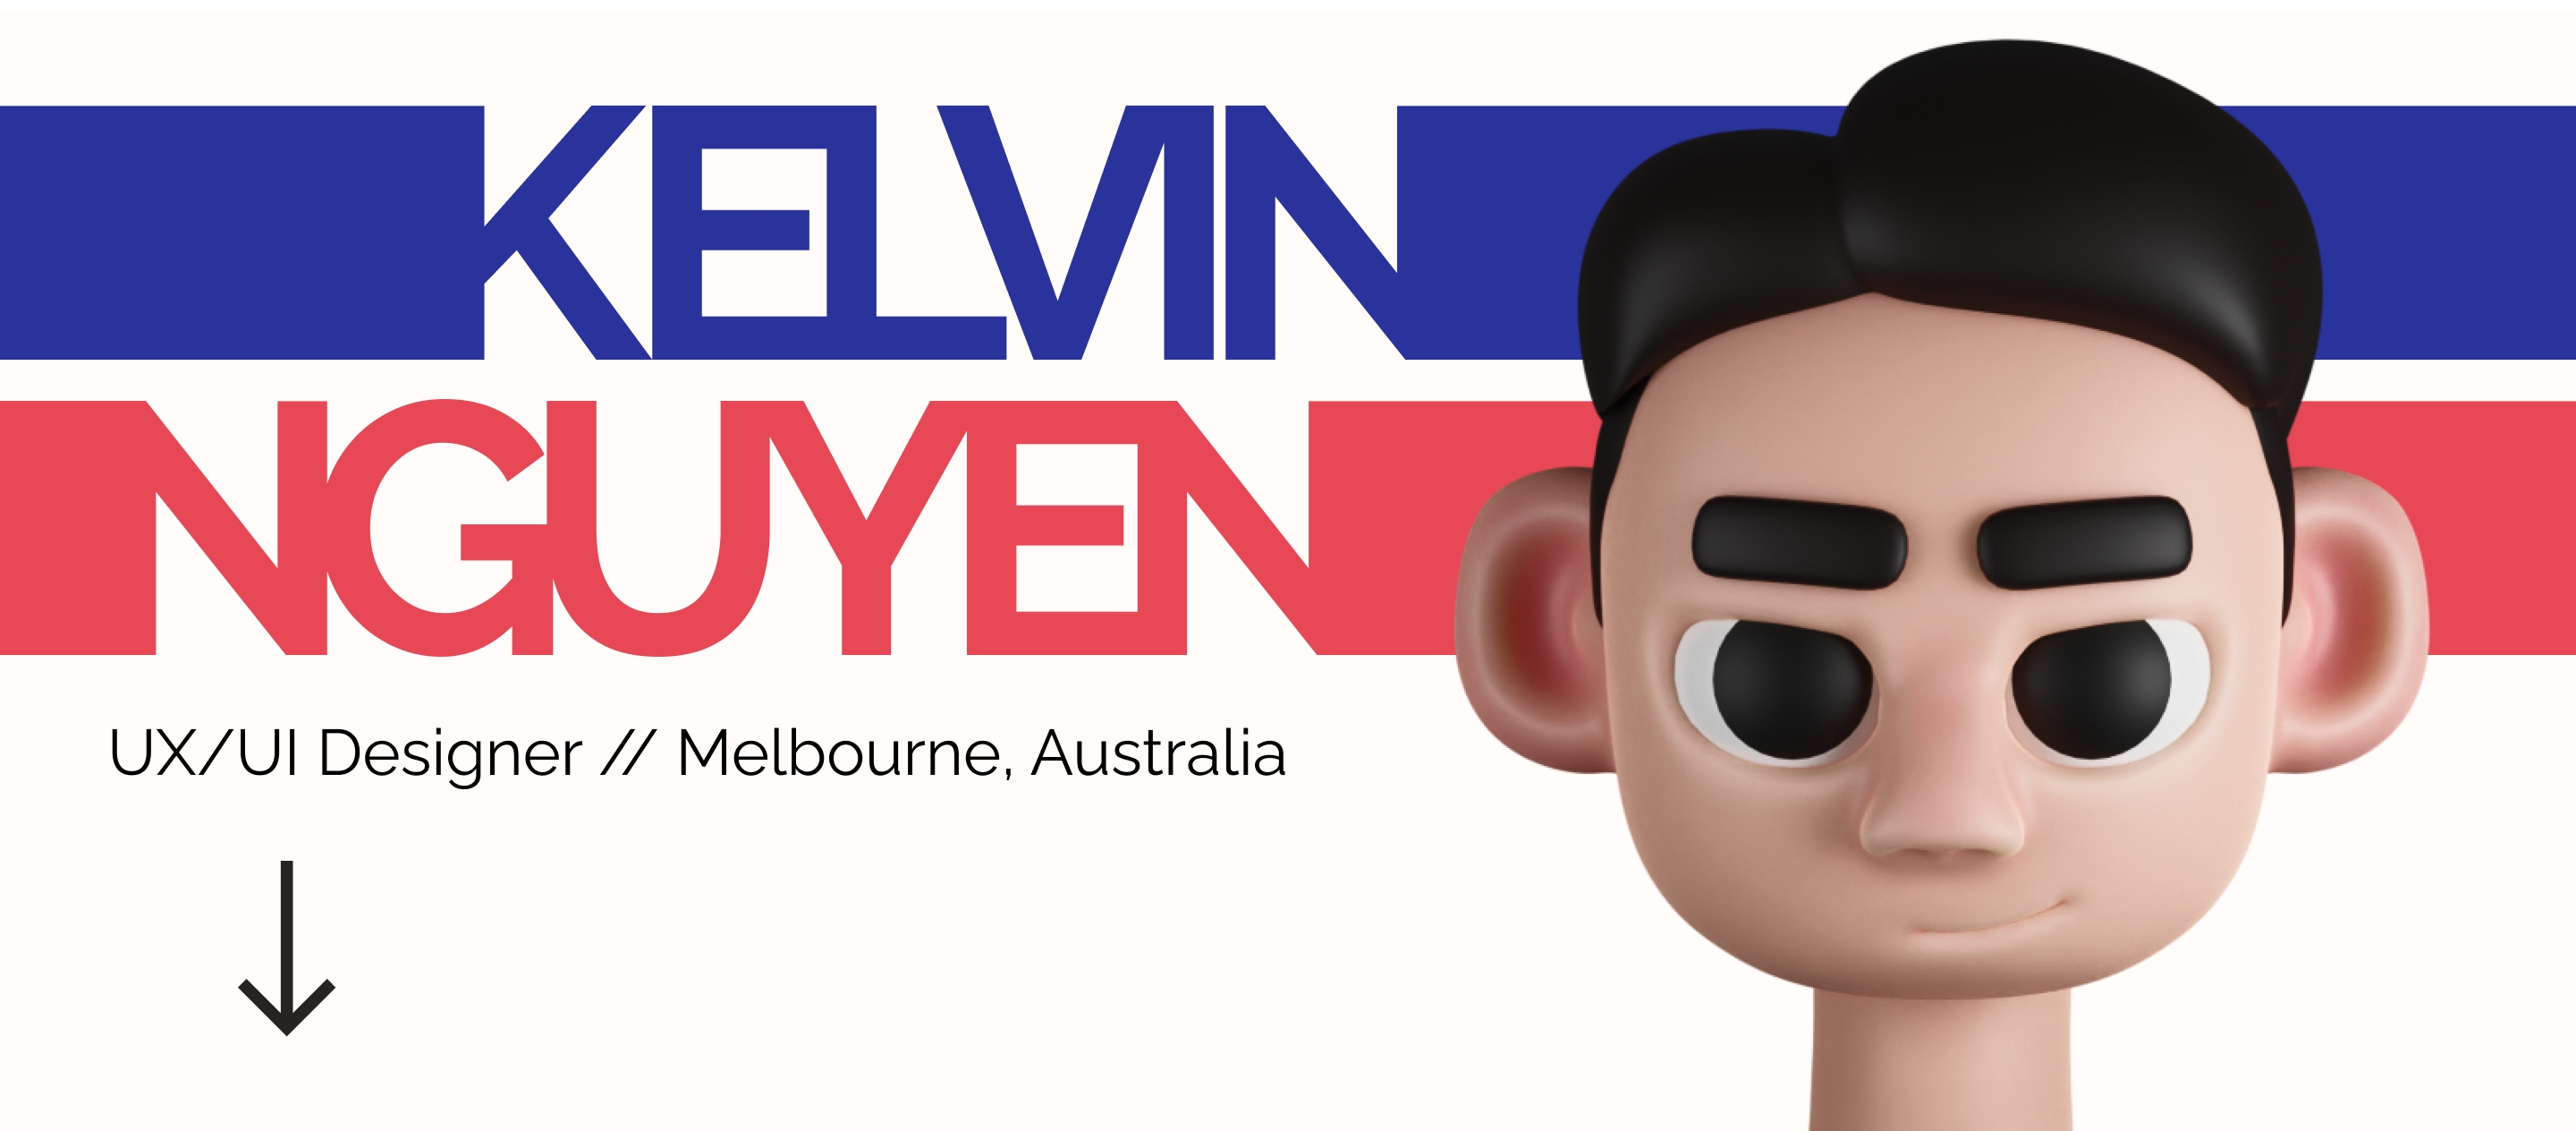 Kelvin Nguyen. UX/UI Designer from Melbourne, Australia.